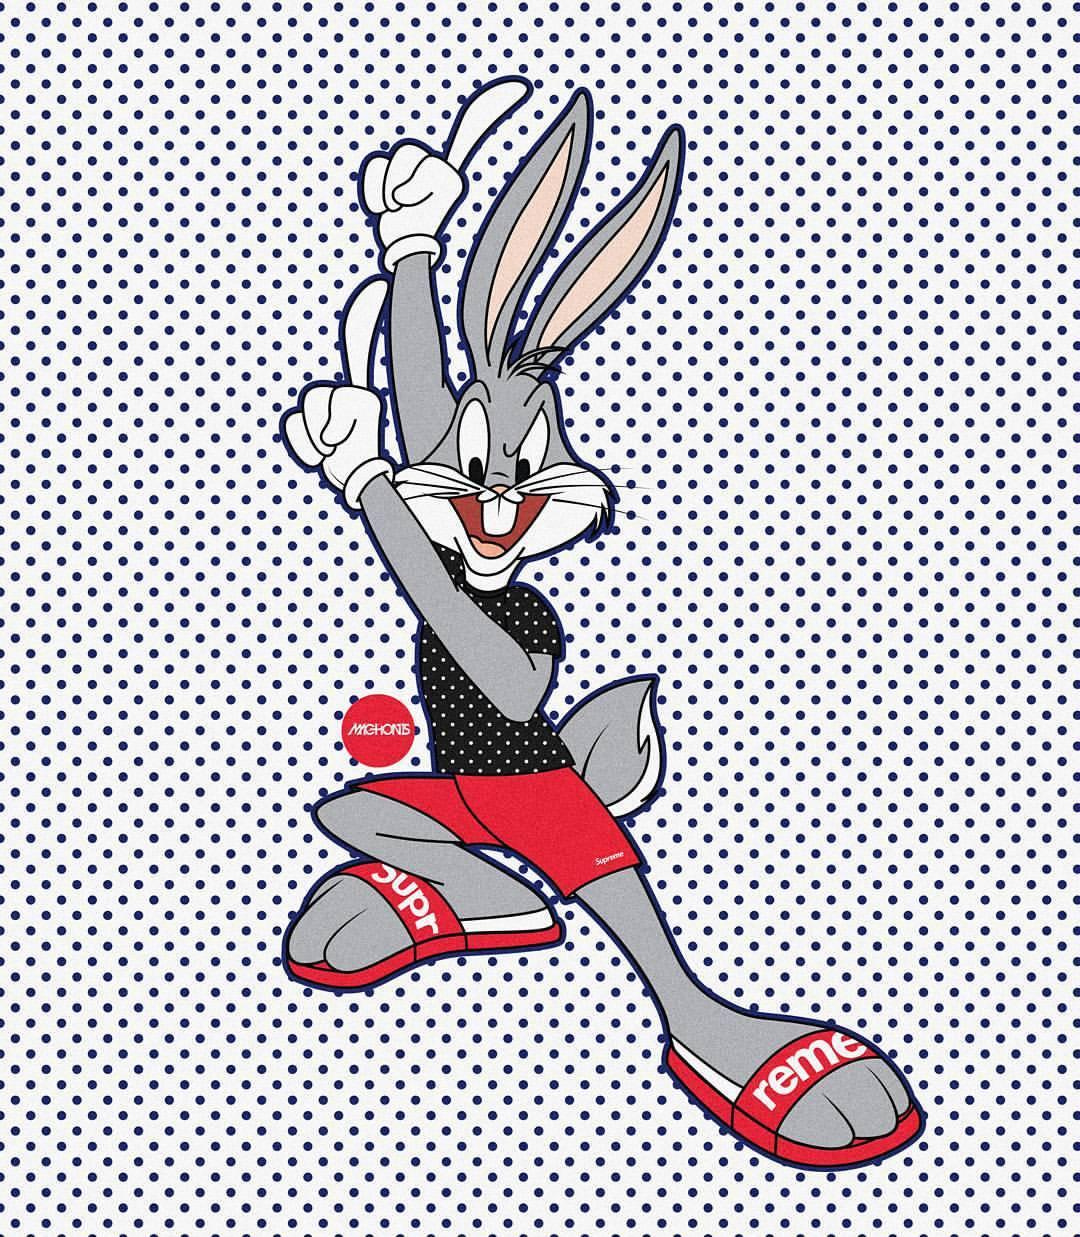 100+] Bugs Bunny Supreme Wallpapers